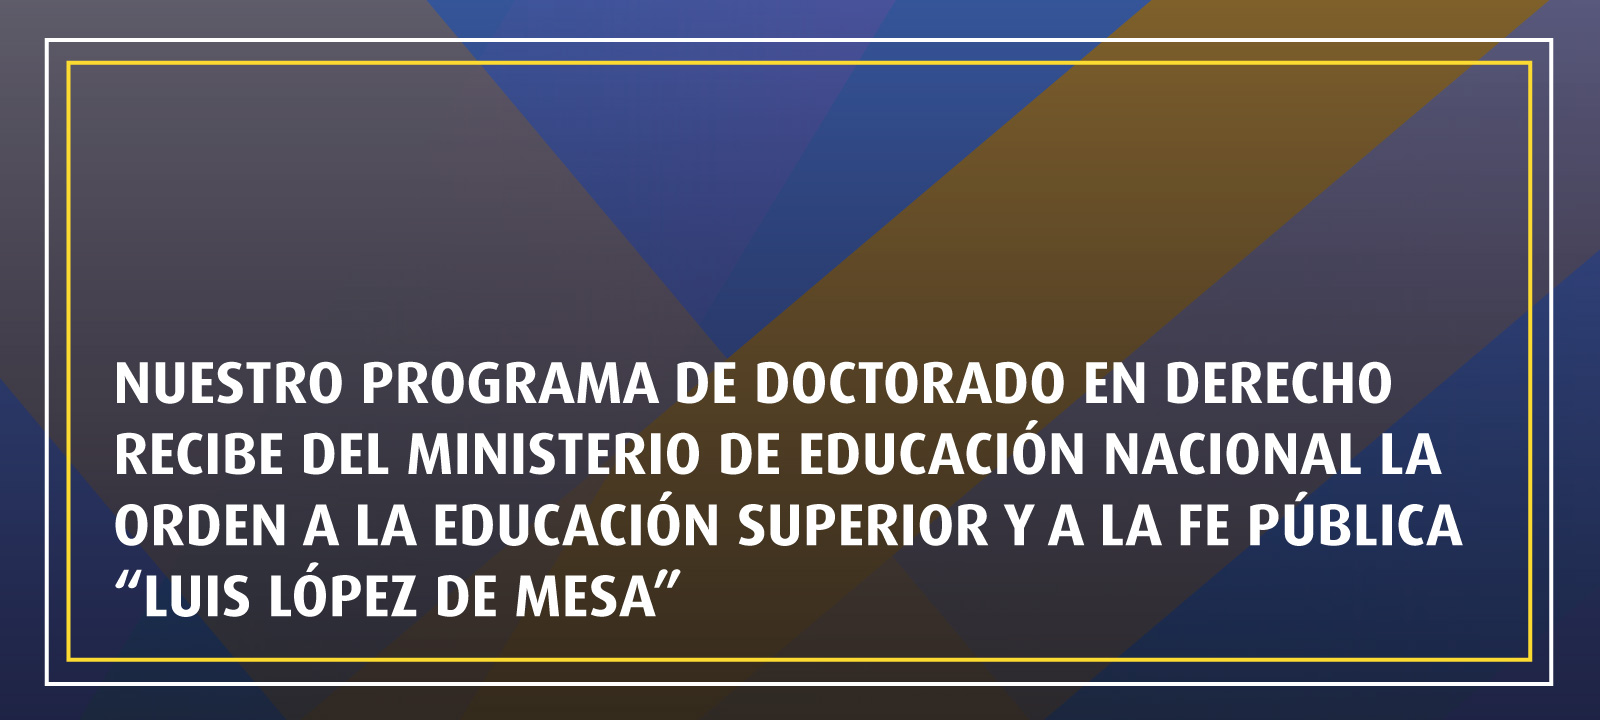 El Doctorado en Derecho recibió la Orden a la Educación Superior y a la Fe Pública "Luis López de Mesa"